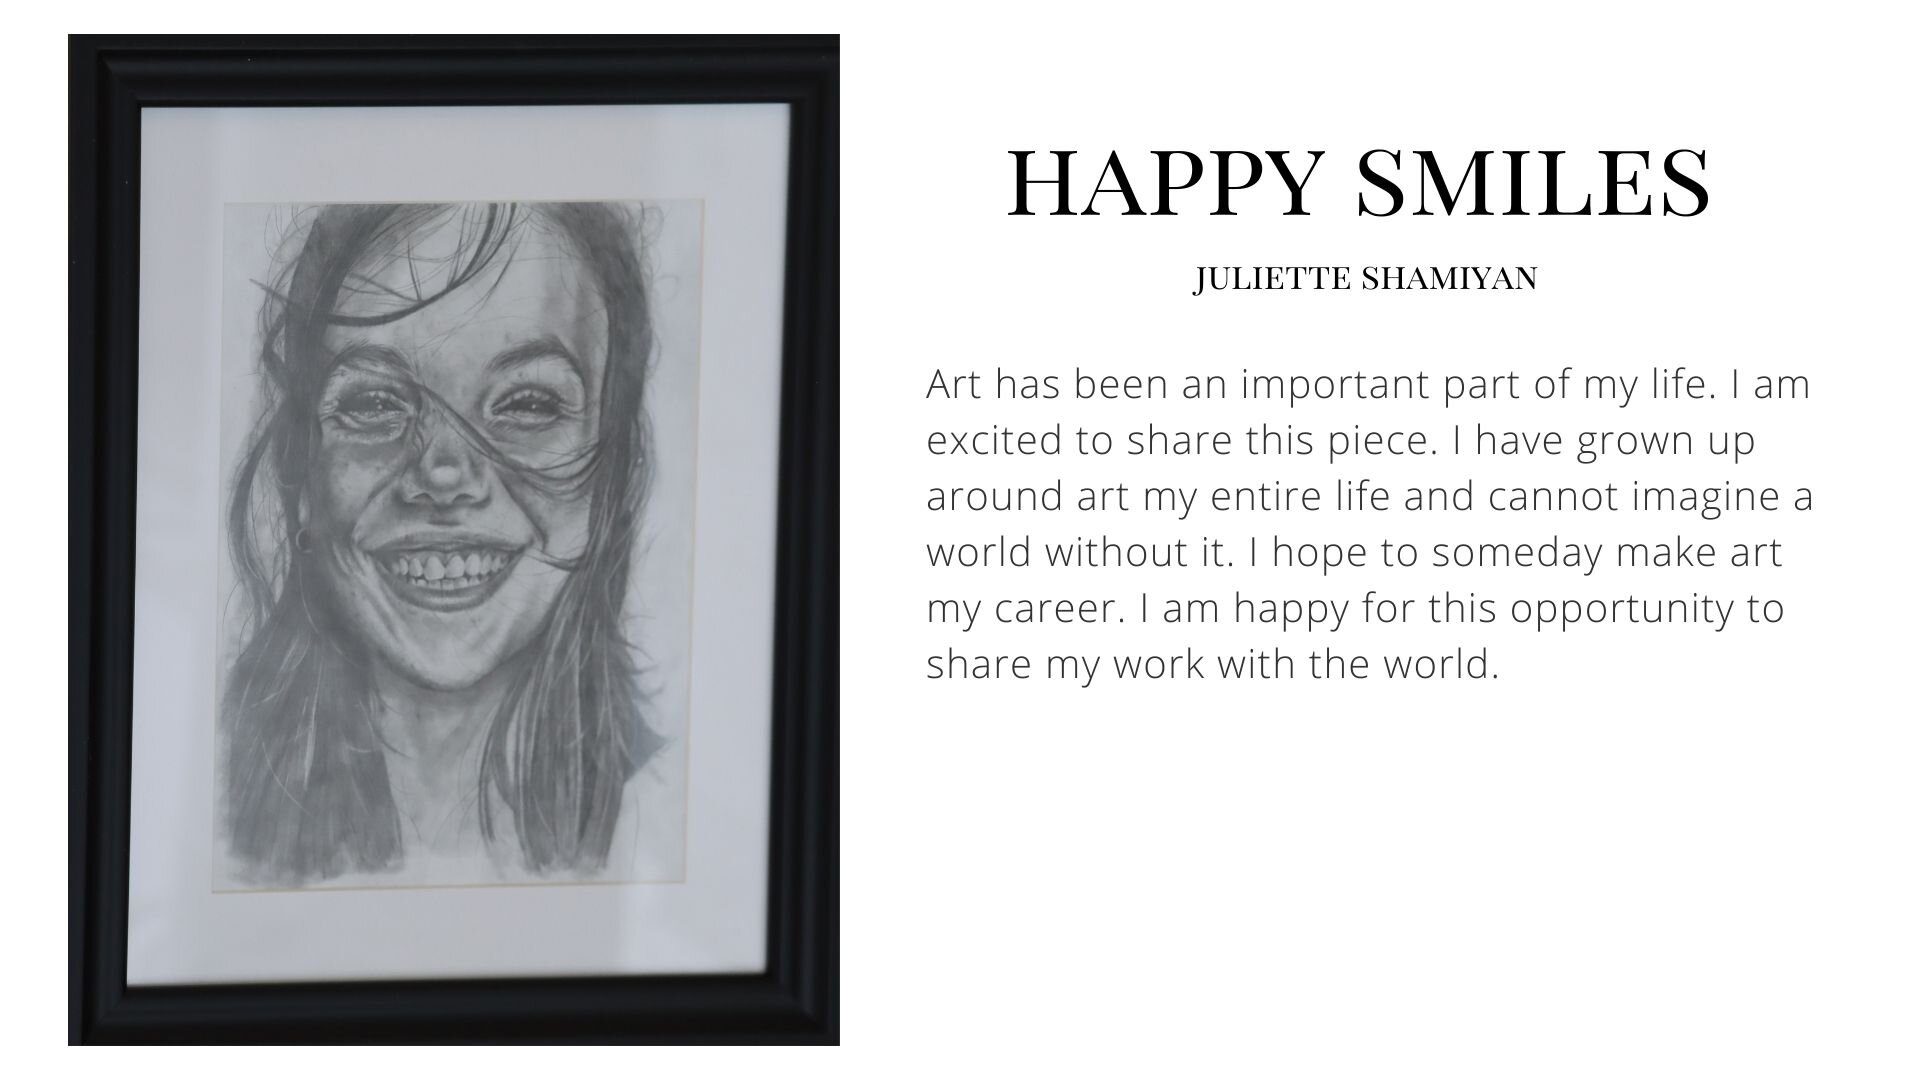 Happy Smiles by Juliette Shamiyan